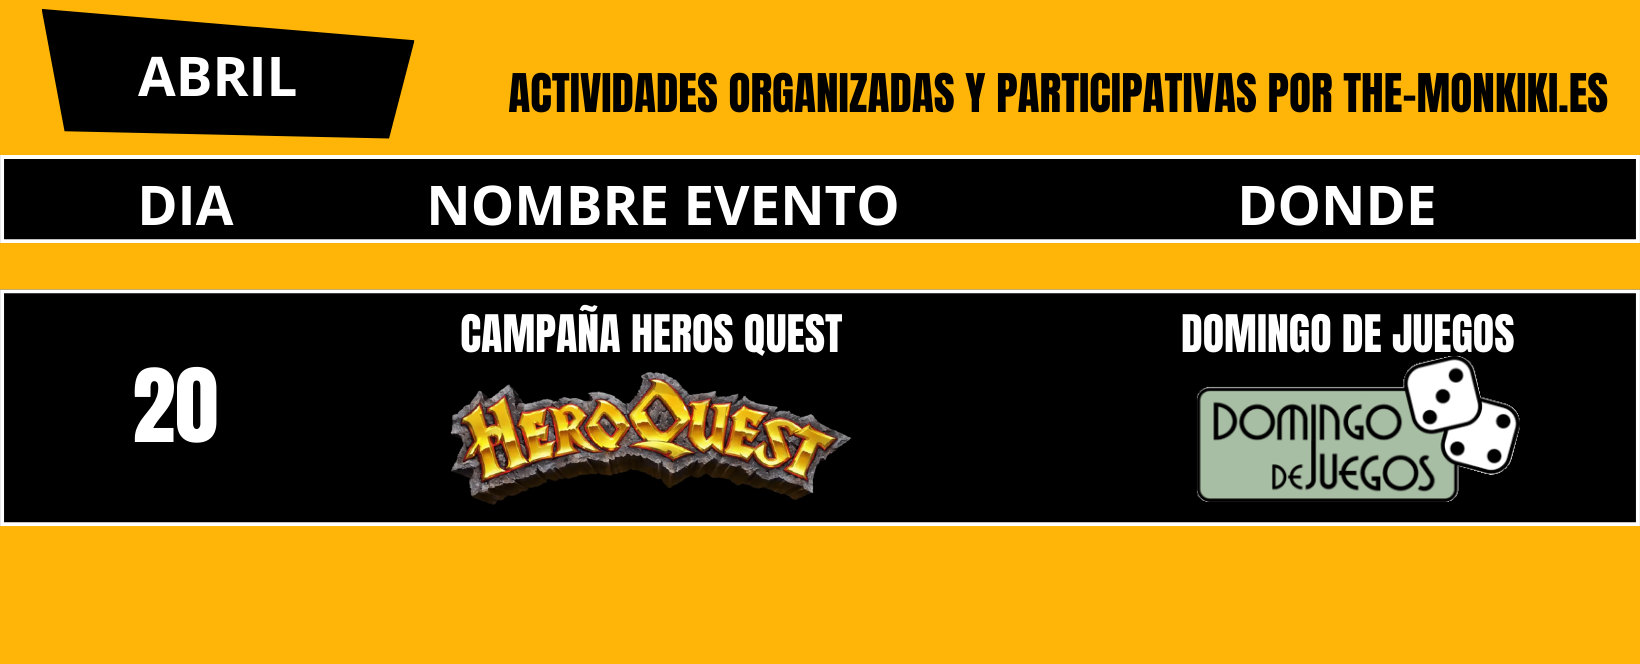 Cuarte campaña a Hero Quest